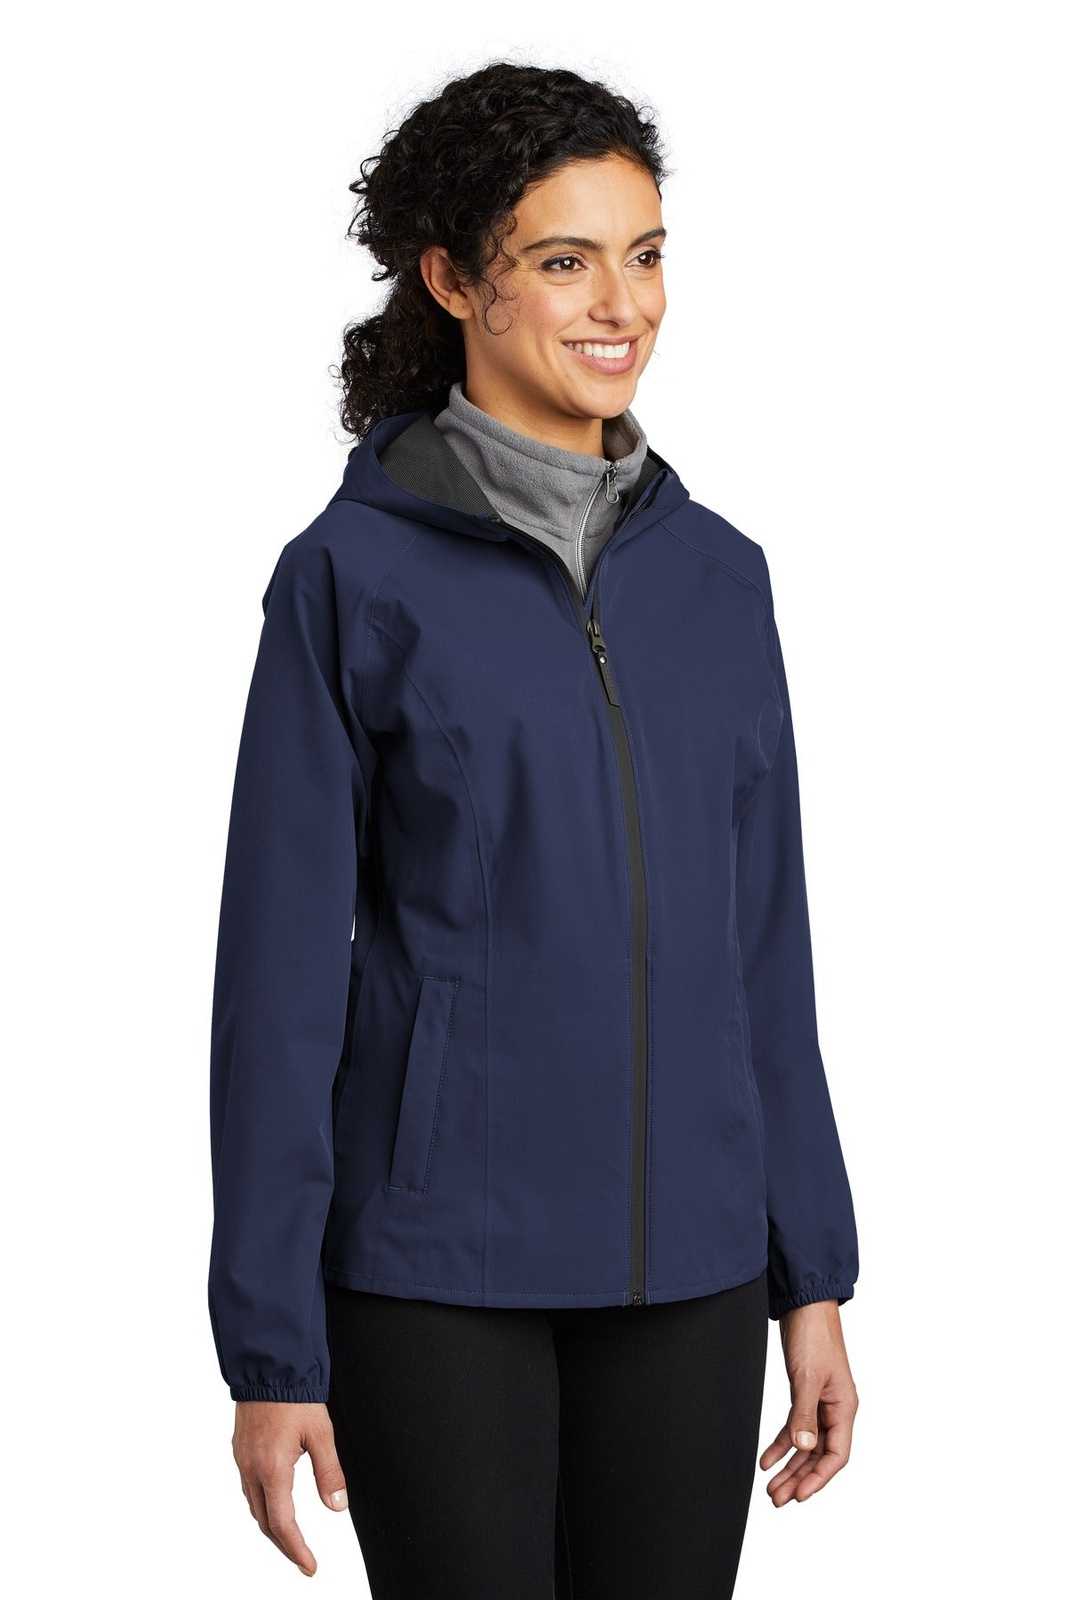 Port Authority L407 Ladies Essential Rain Jacket - True Navy - HIT a Double - 4